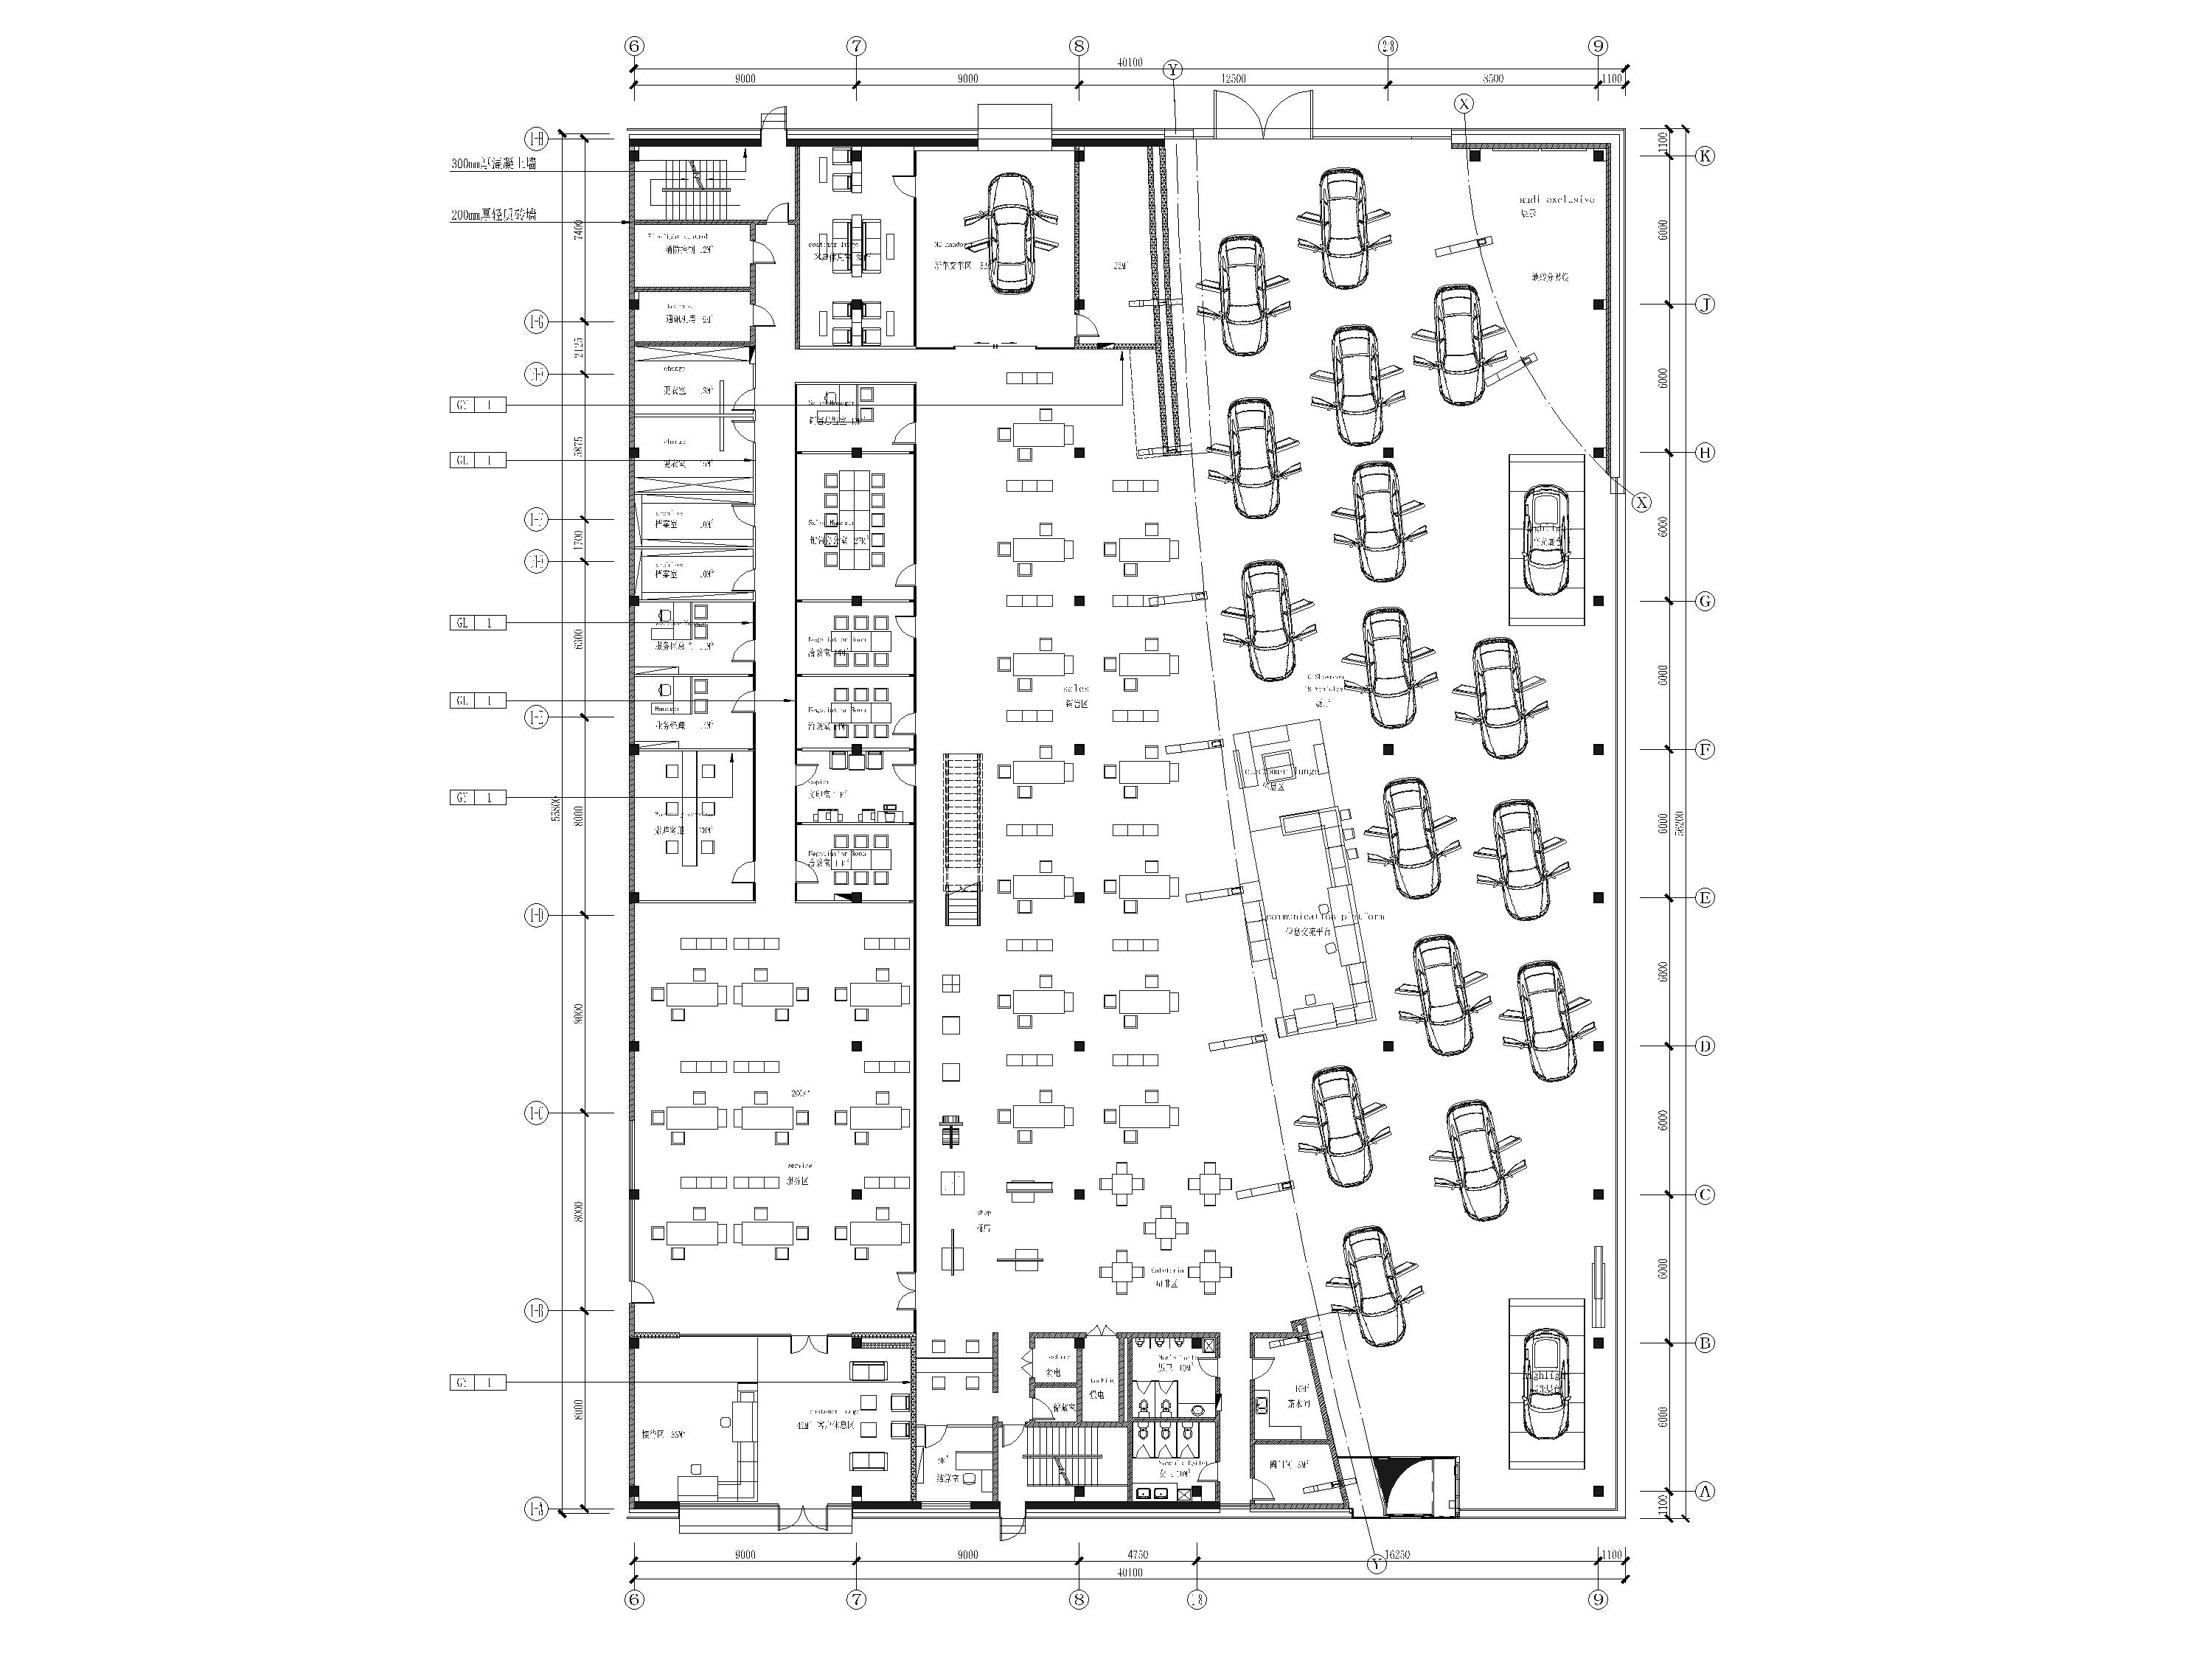 4000㎡奥迪汽车展厅4S店室内装修设计施工图-一层平面布置图